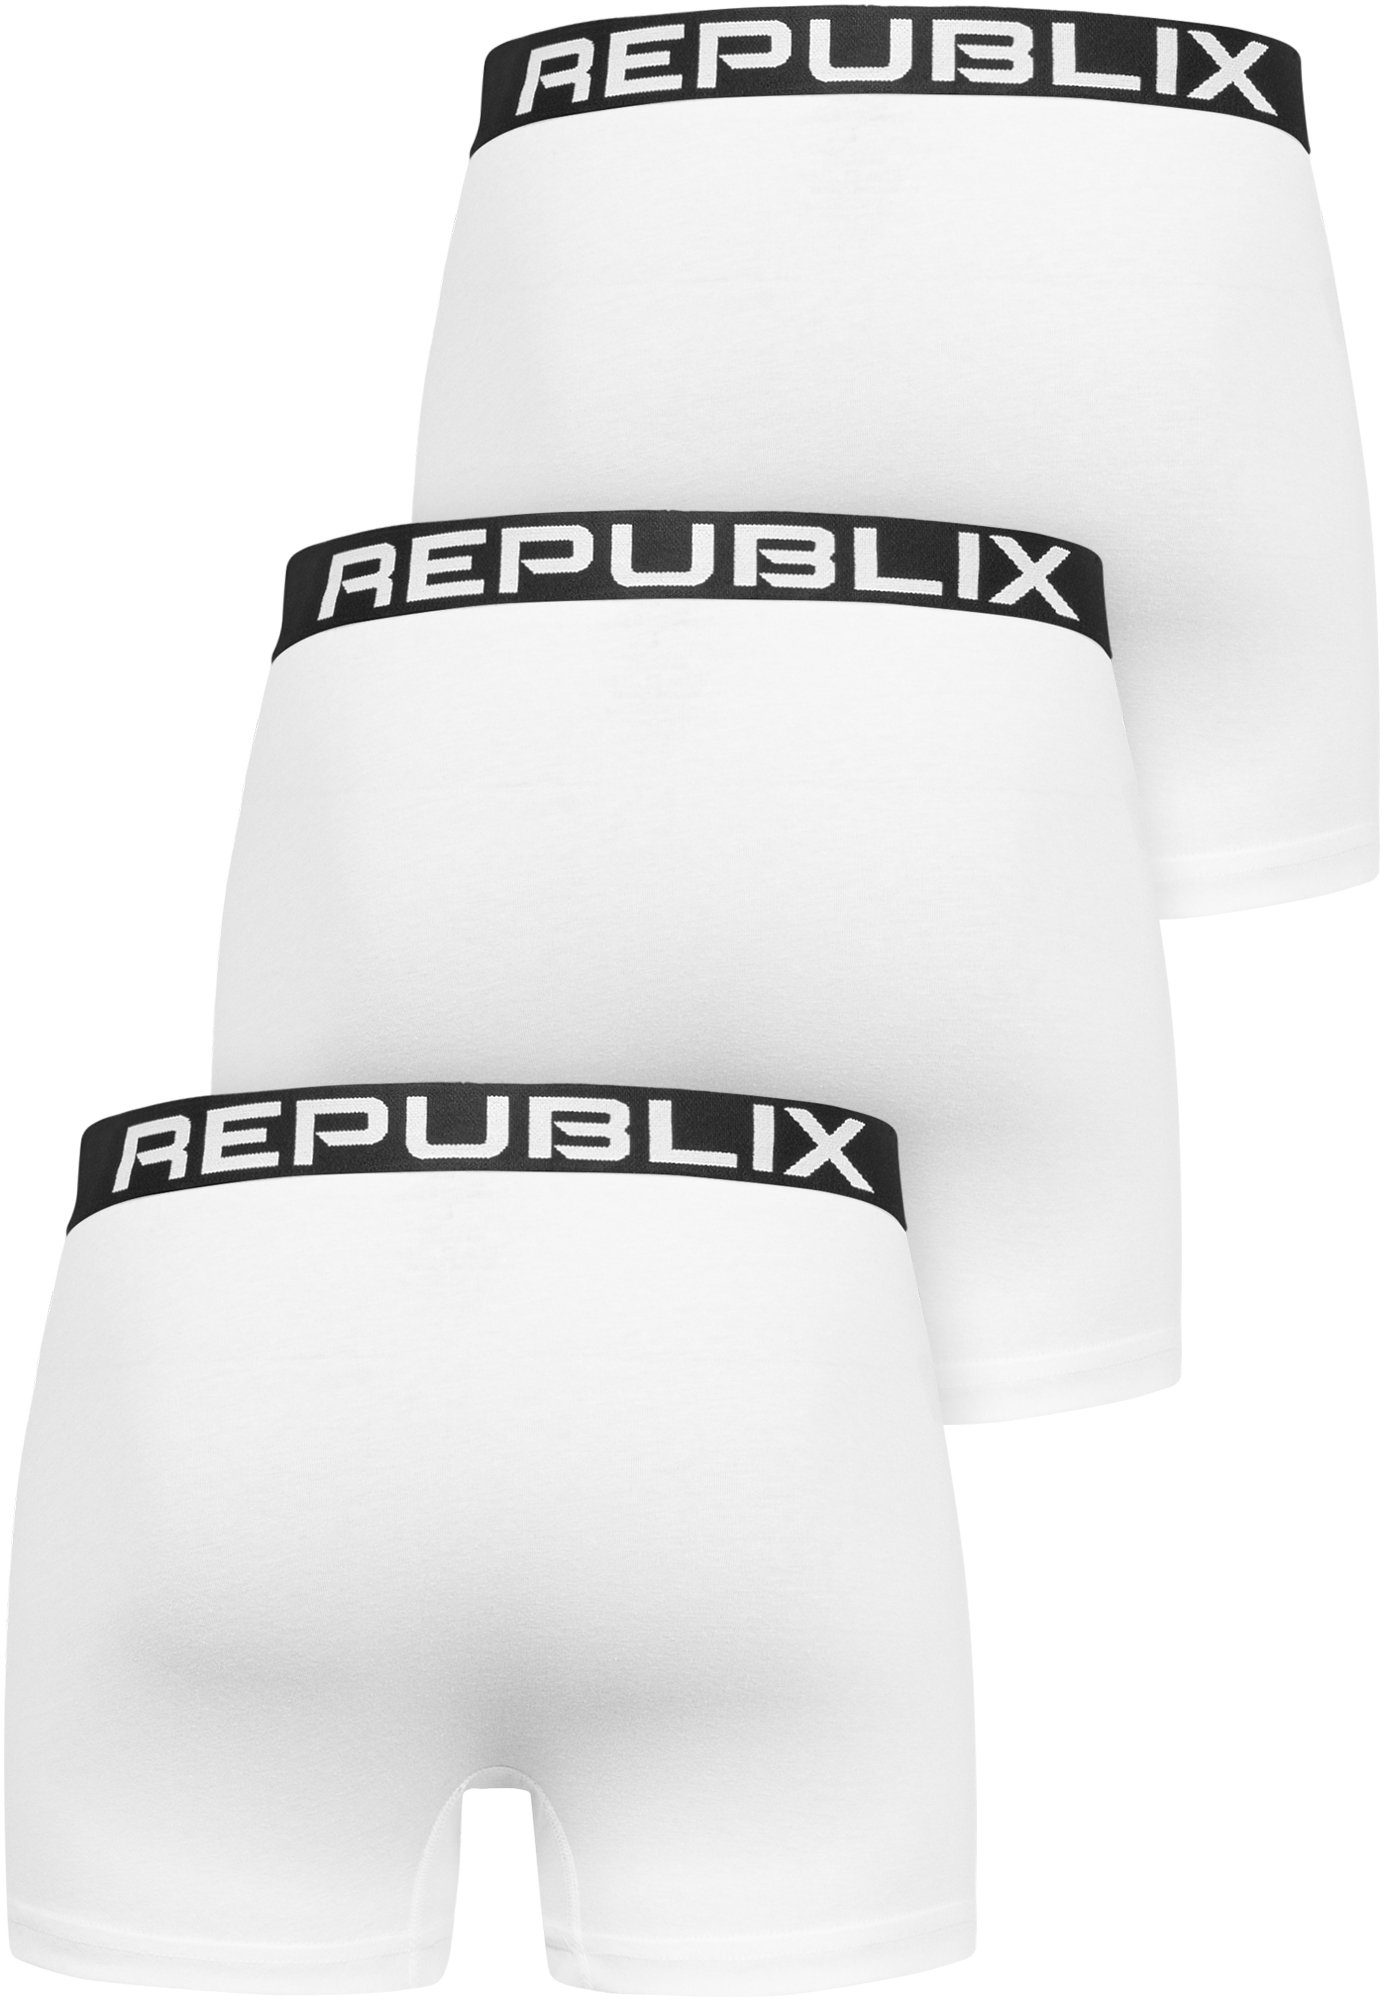 DON REPUBLIX (3er-Pack) Weiß/Schwarz Herren Unterwäsche Boxershorts Unterhose Männer Baumwolle